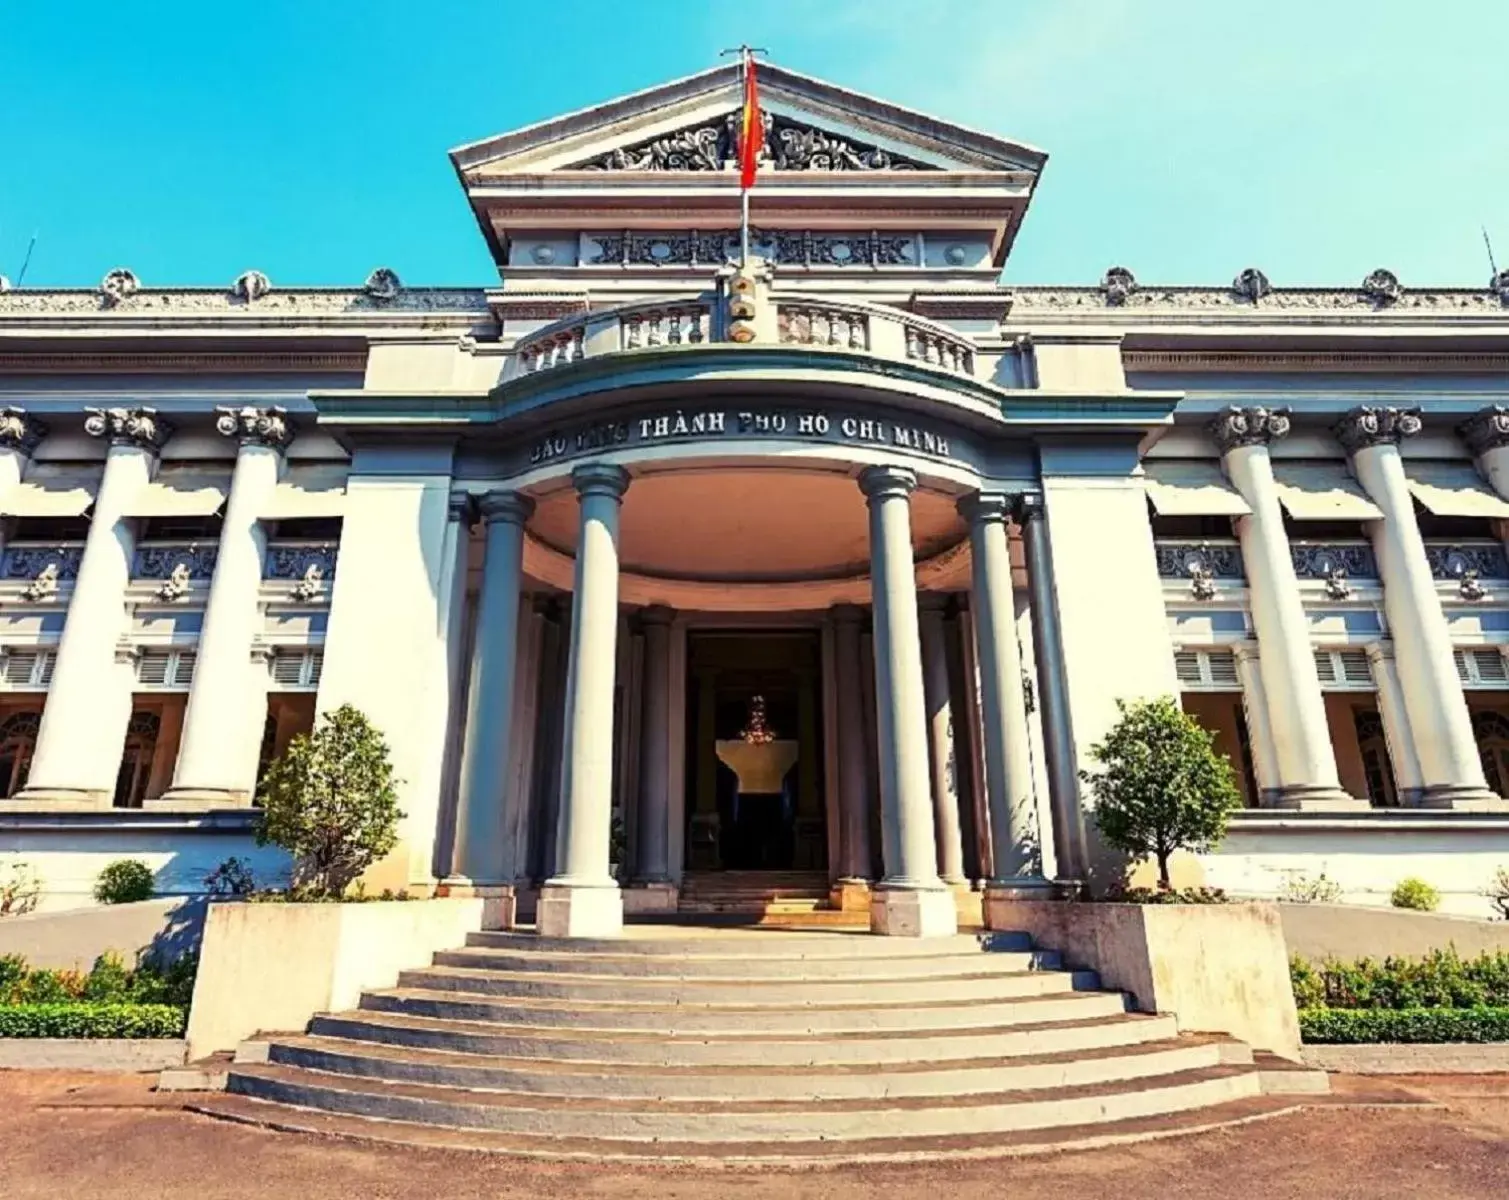 Nearby landmark in Sen Sai Gon Hotel Ben Thanh Market